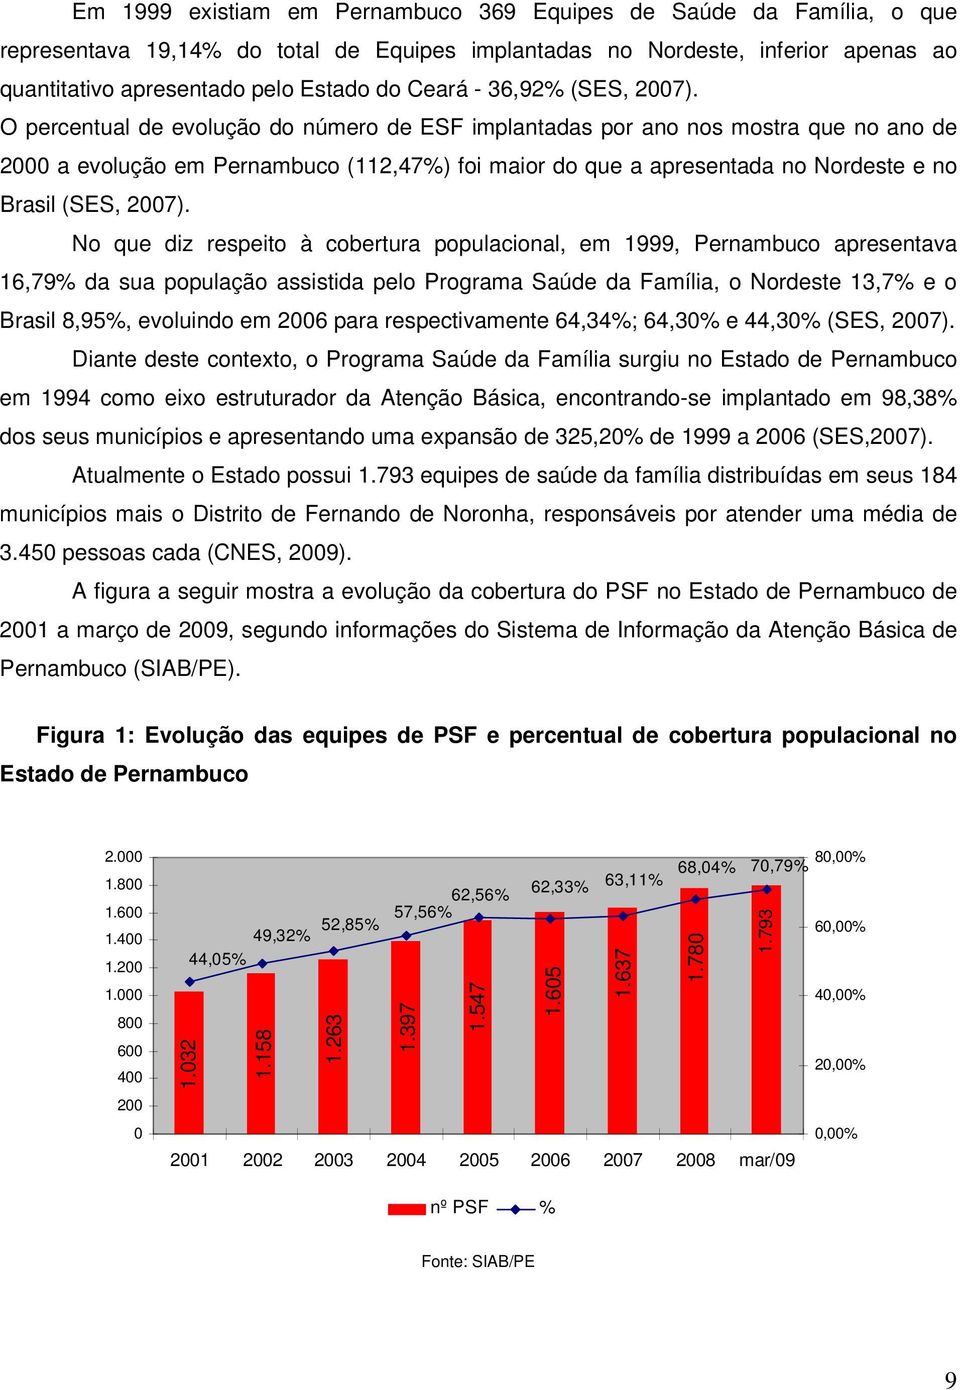 O percentual de evolução do número de ESF implantadas por ano nos mostra que no ano de 2000 a evolução em Pernambuco (112,47%) foi maior do que a apresentada no Nordeste e no Brasil (SES, 2007).